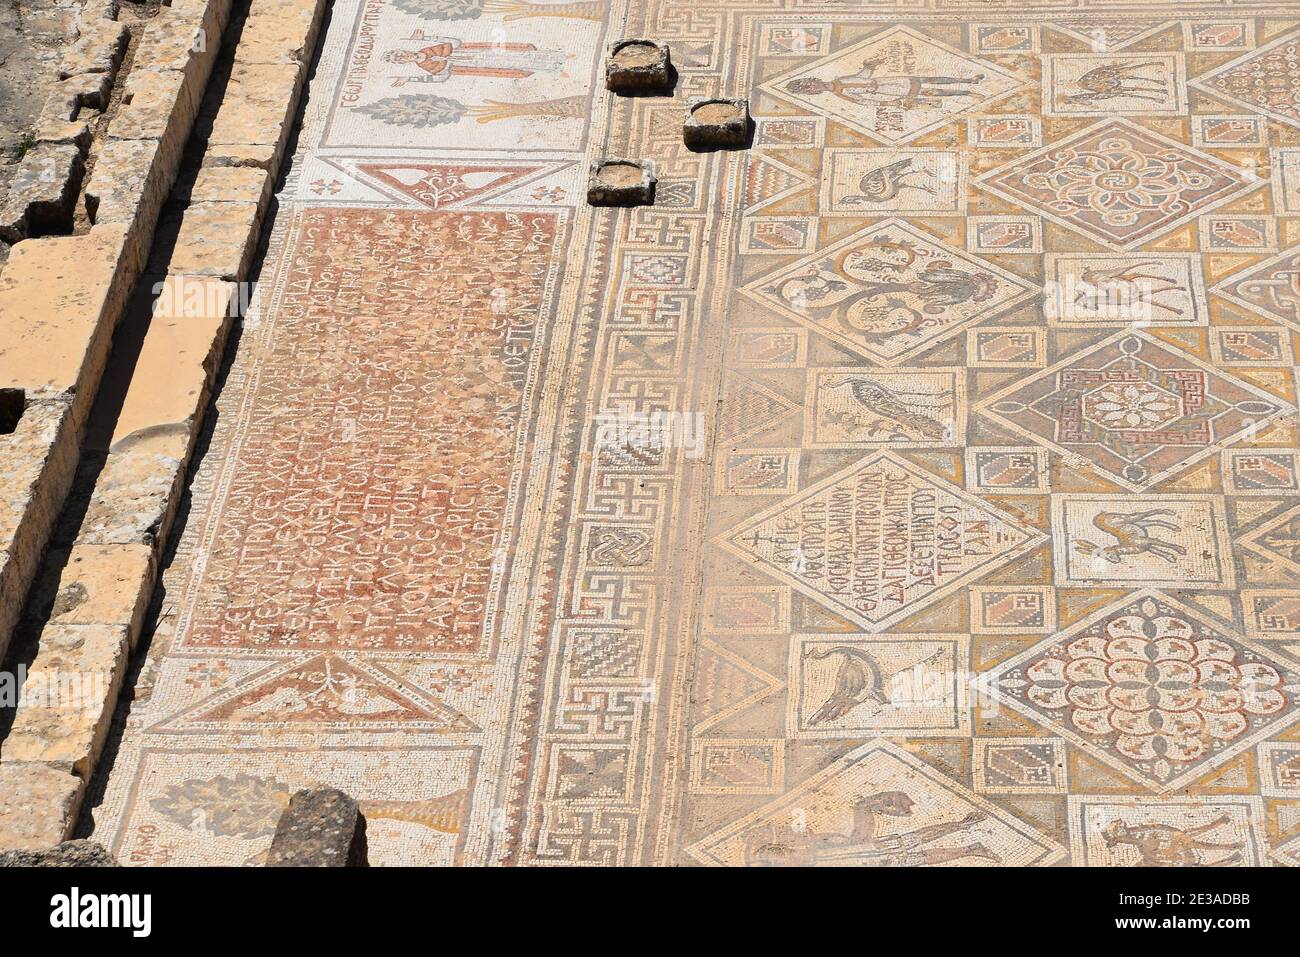 Byzantinisches Mosaik auf dem Boden der Ruine der Kirche Johannes des Täufers in Jerash (Gerasa), Jordanien, Mittlerer Osten. Mosaikboden aus byzantinischer Zeit. Stockfoto